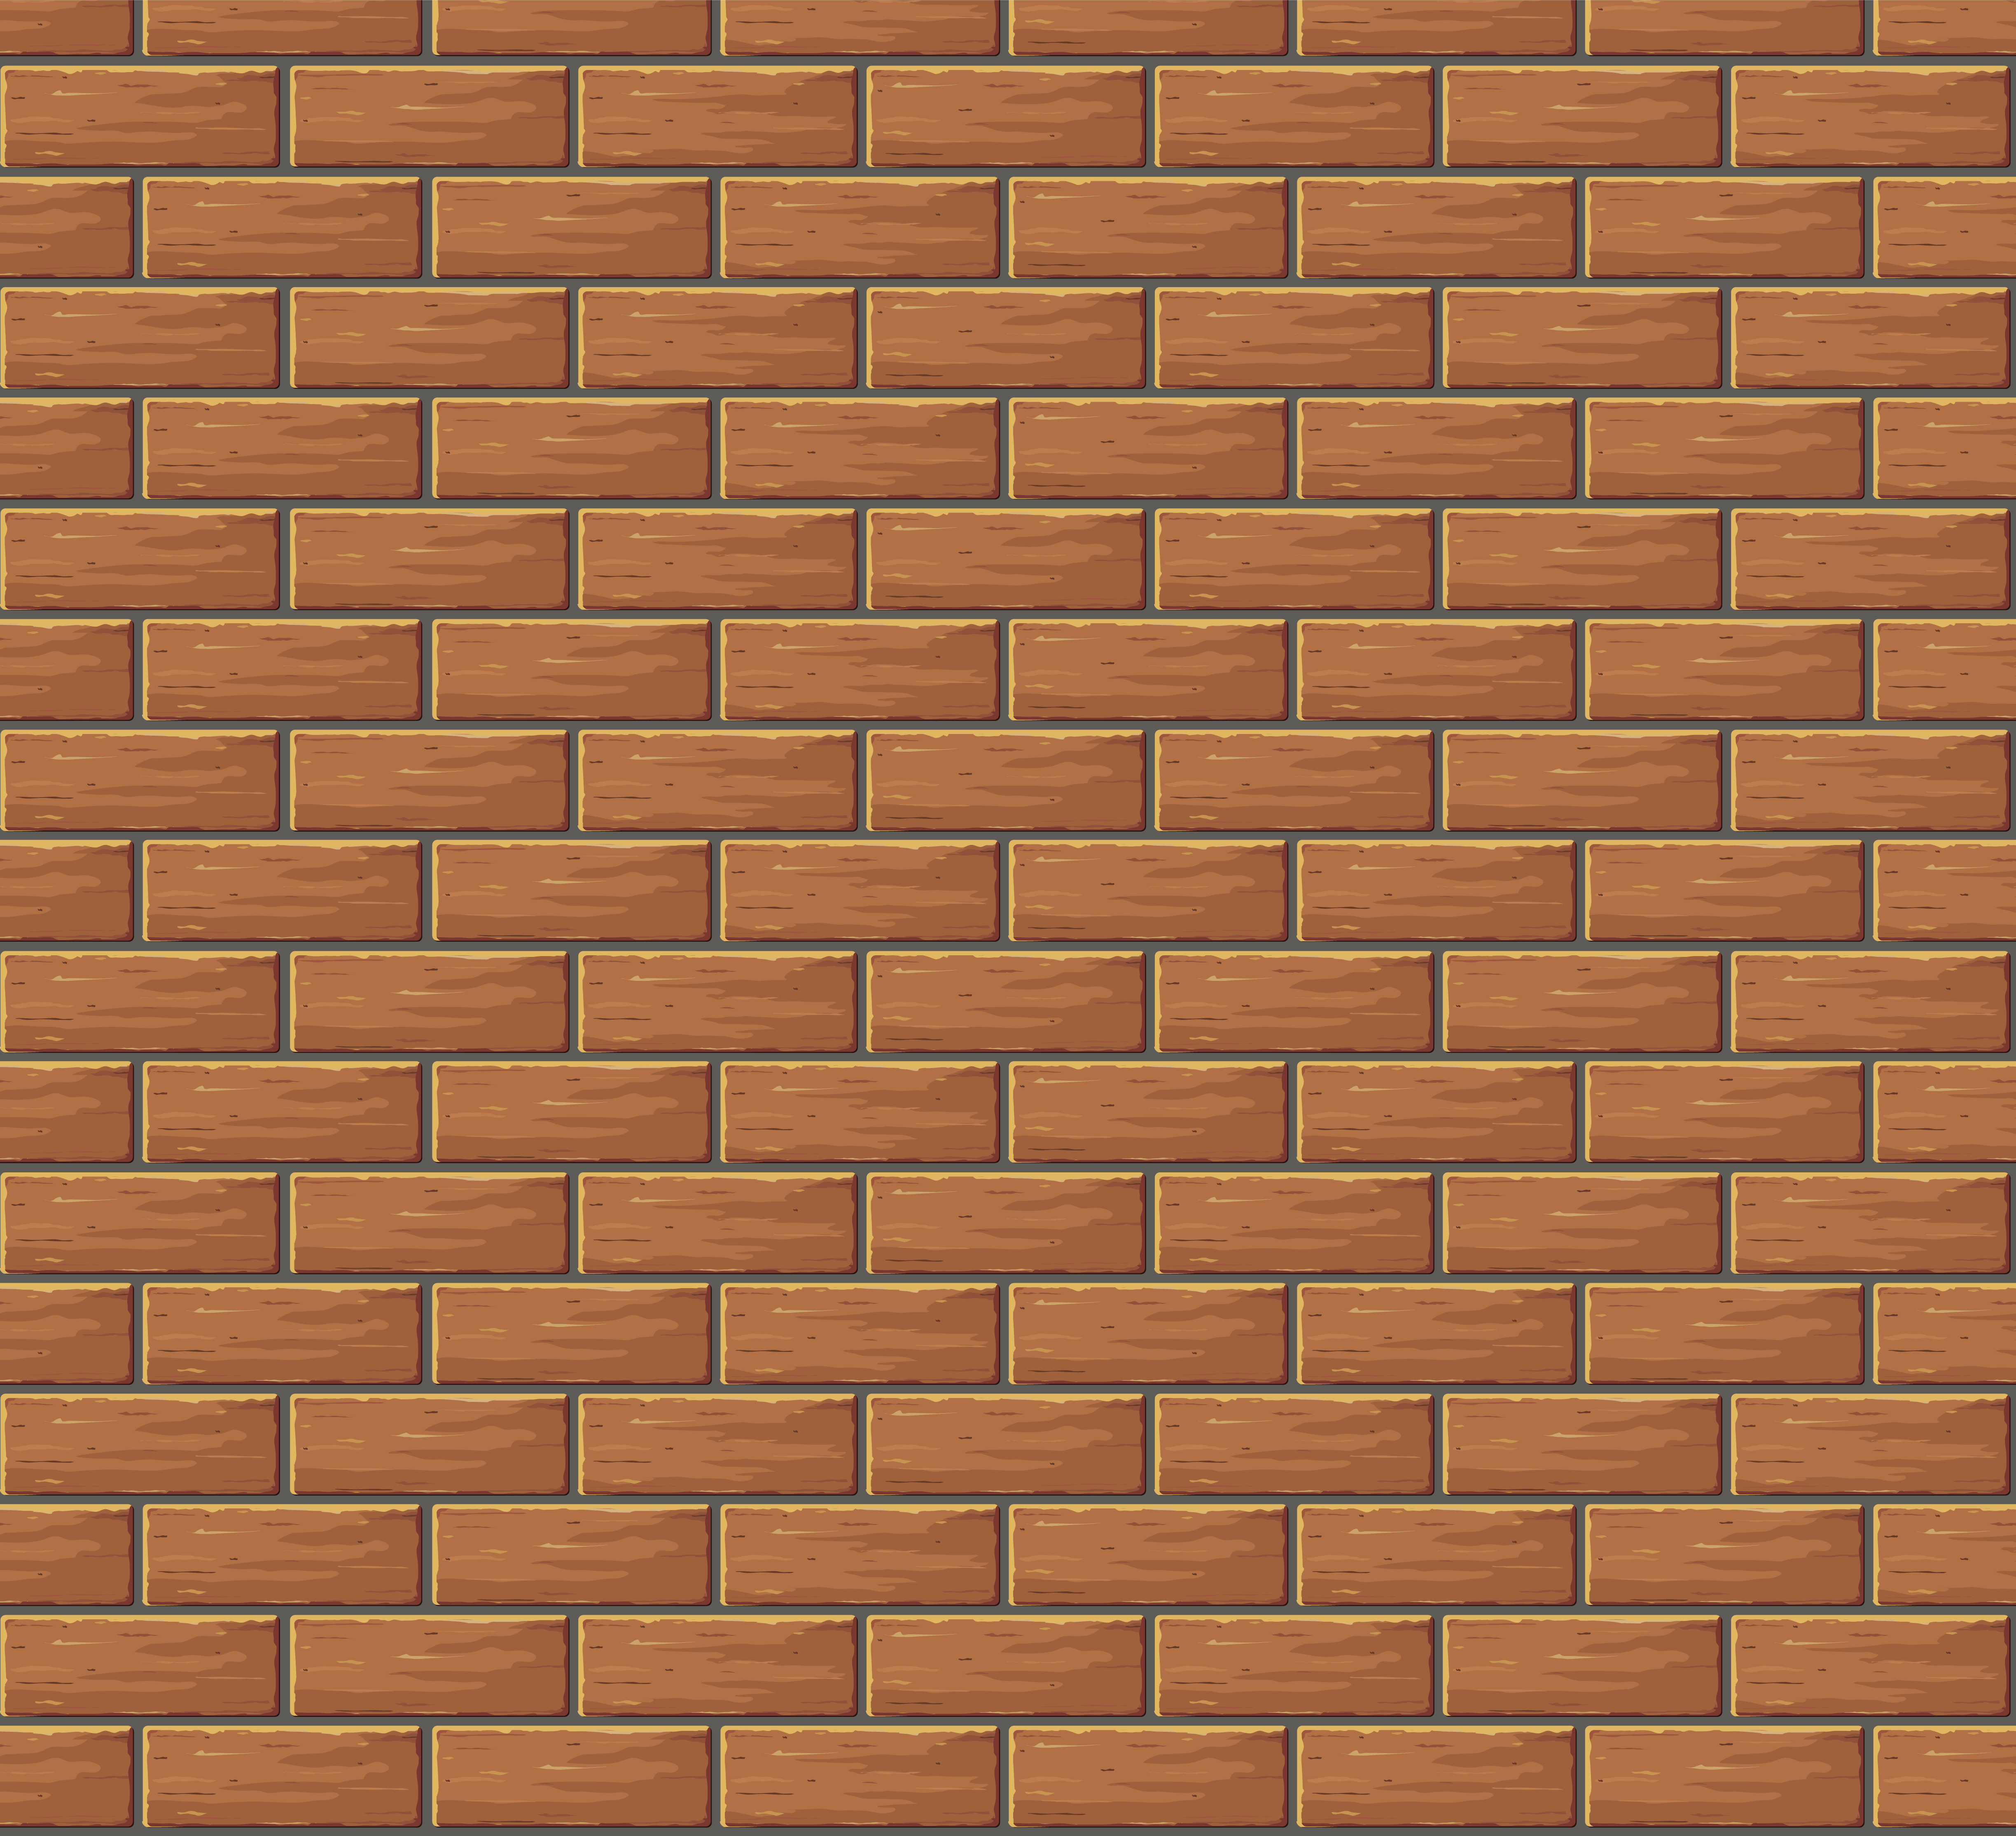 Brick HD PNG - 90008